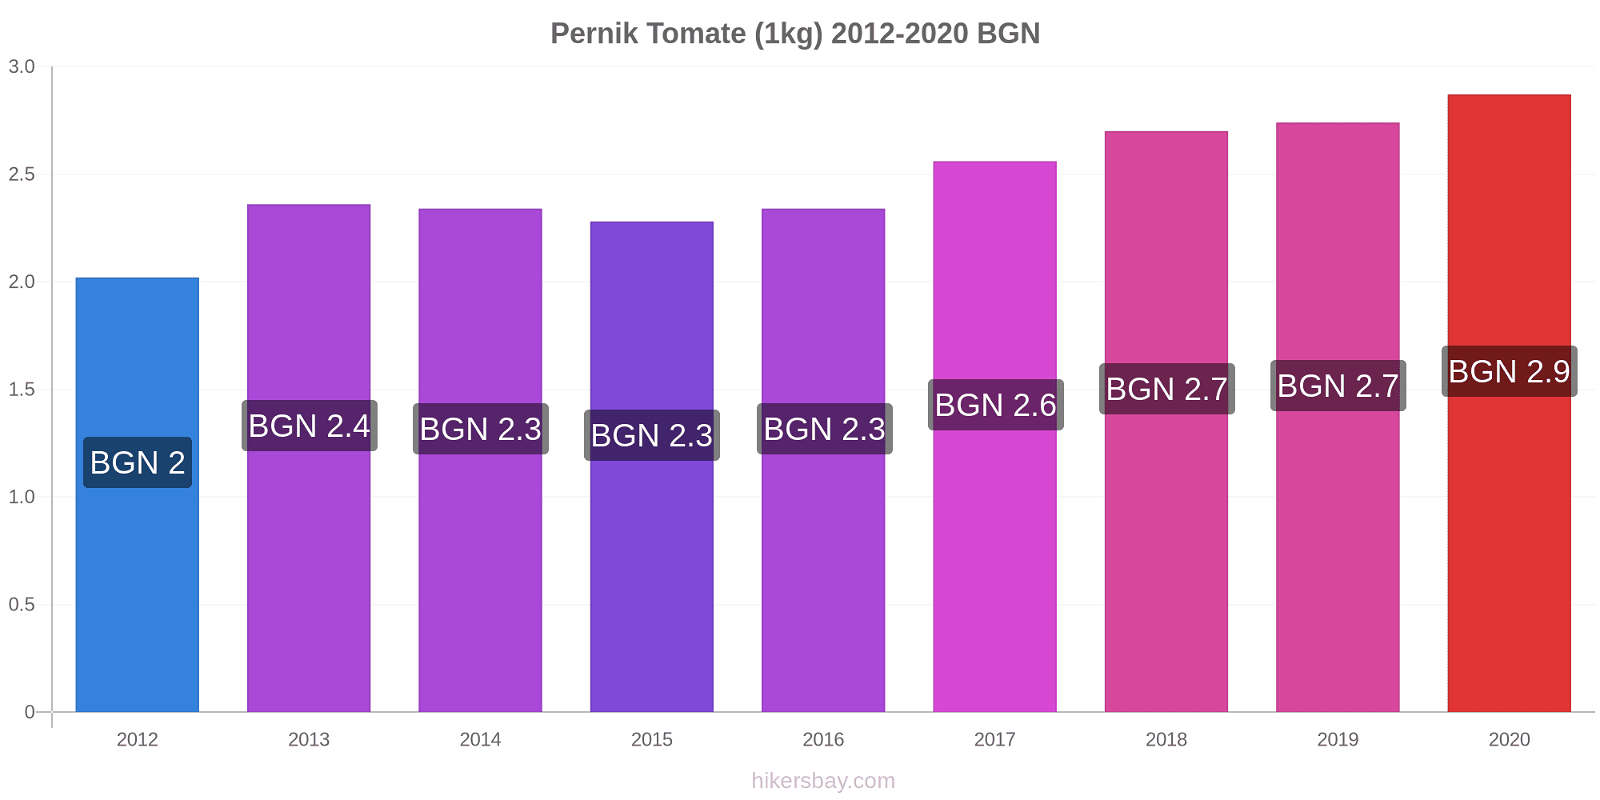 Pernik changements de prix Tomate (1kg) hikersbay.com